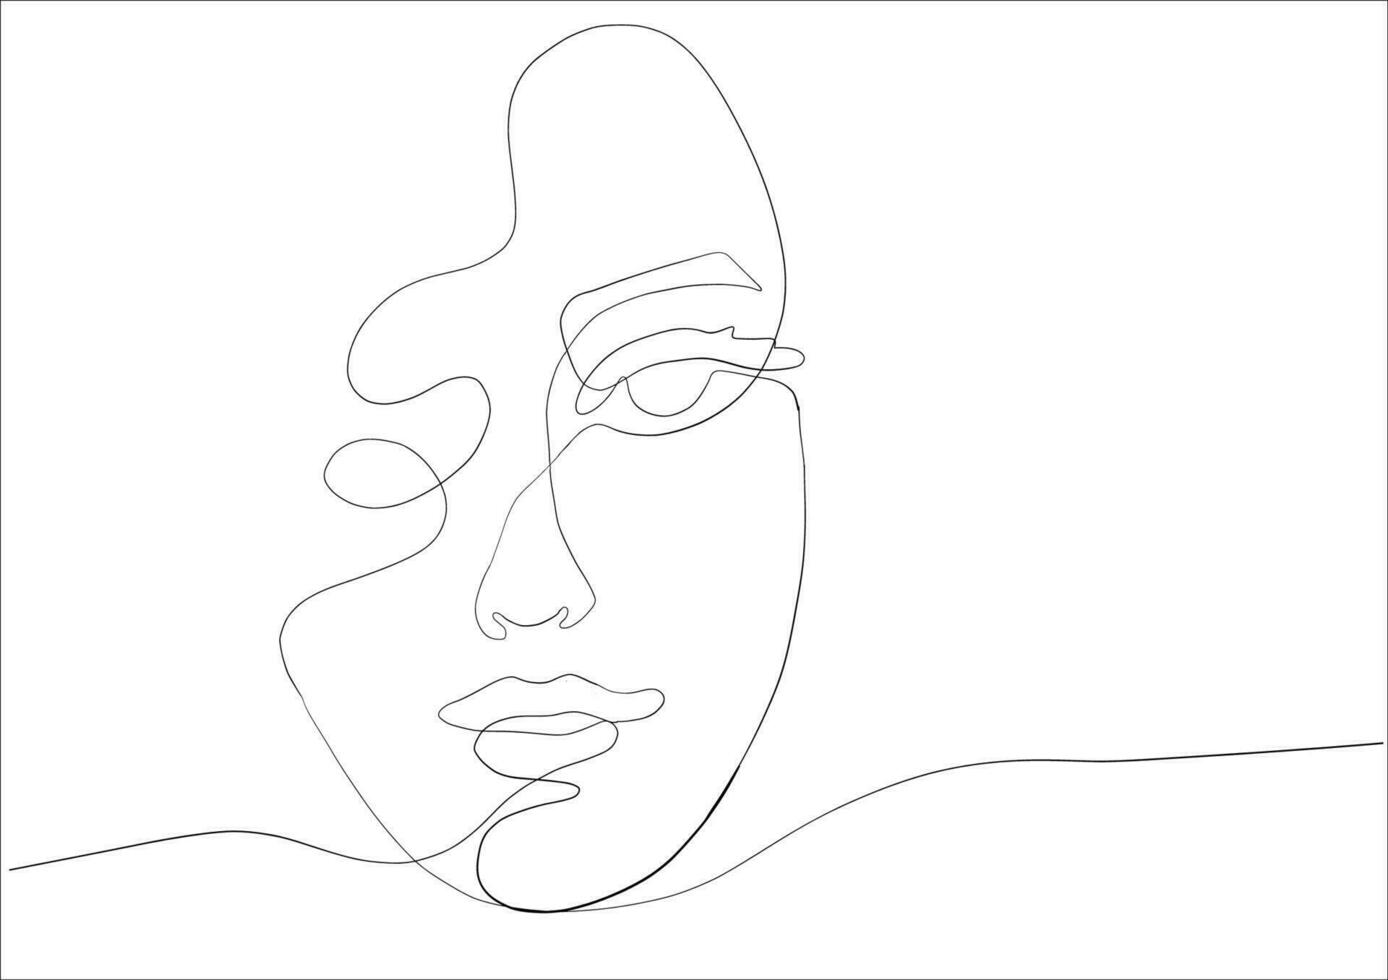 continuo linea disegno di viso donna.astratto linea arte ritratto, linea, continua linea di disegno, vettore minimalismo stile e schizzo ritratto concetto.